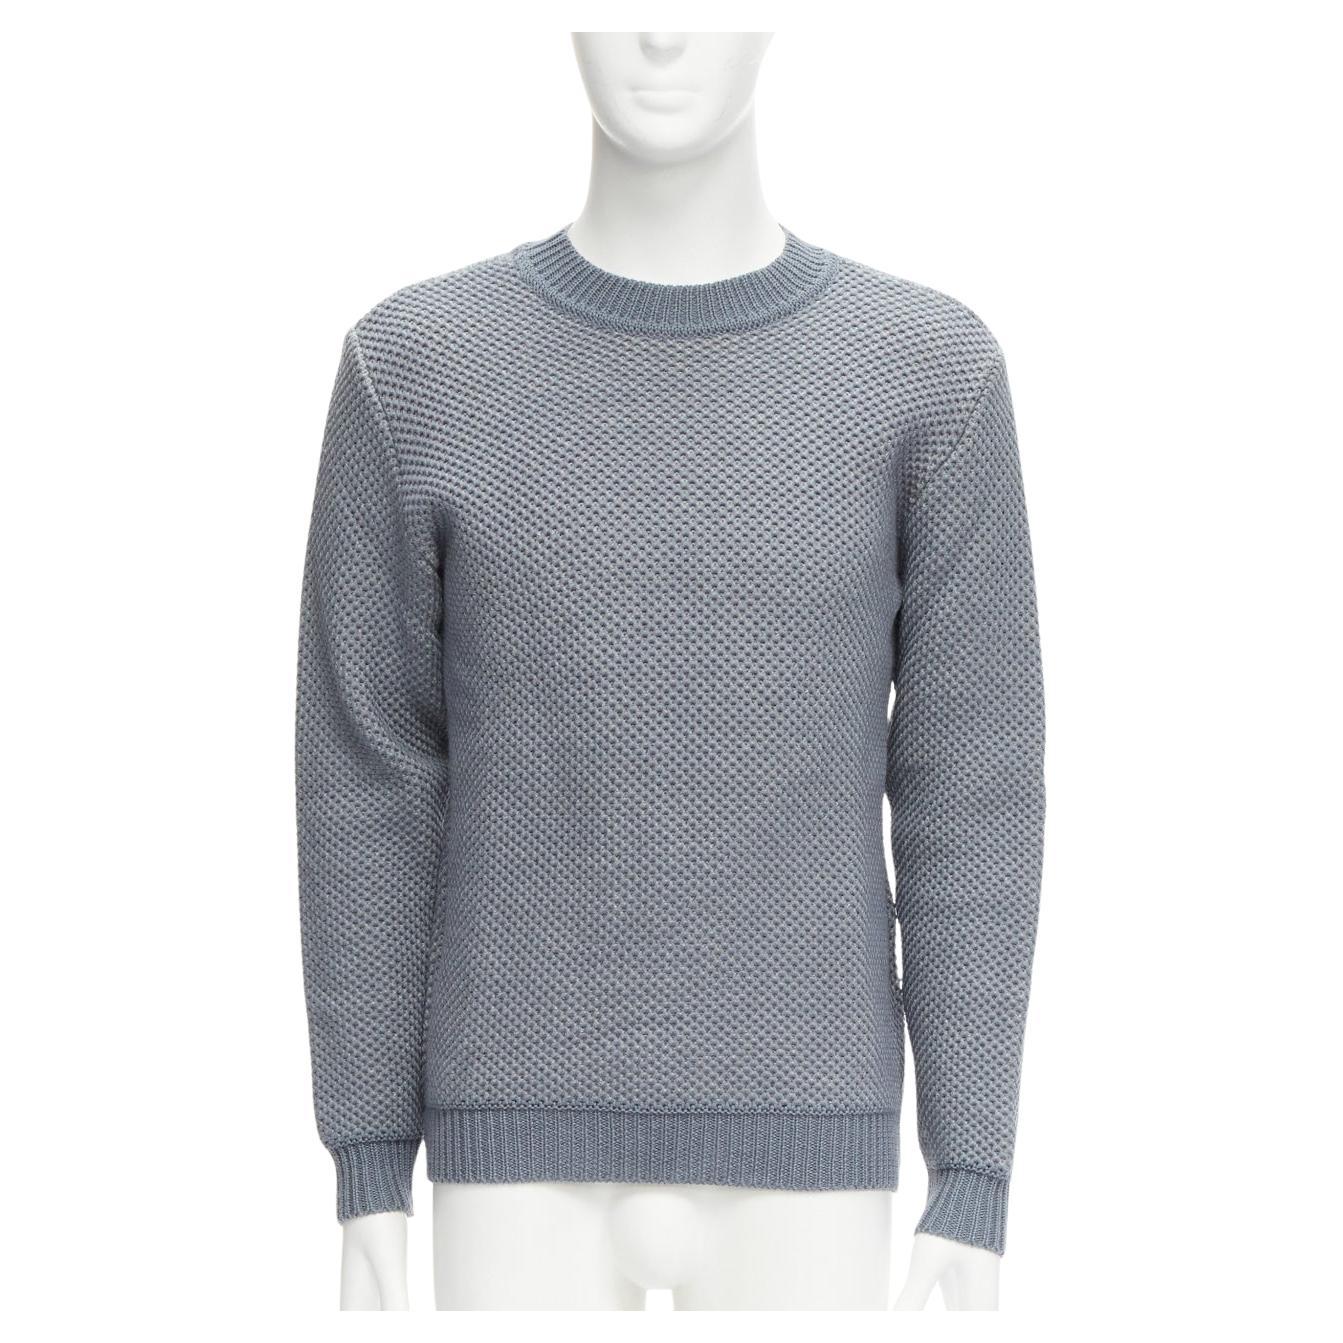 STEPHEN SCHNEIDER 100% textured waffle wool grey crew neck sweater Sz 4 L For Sale